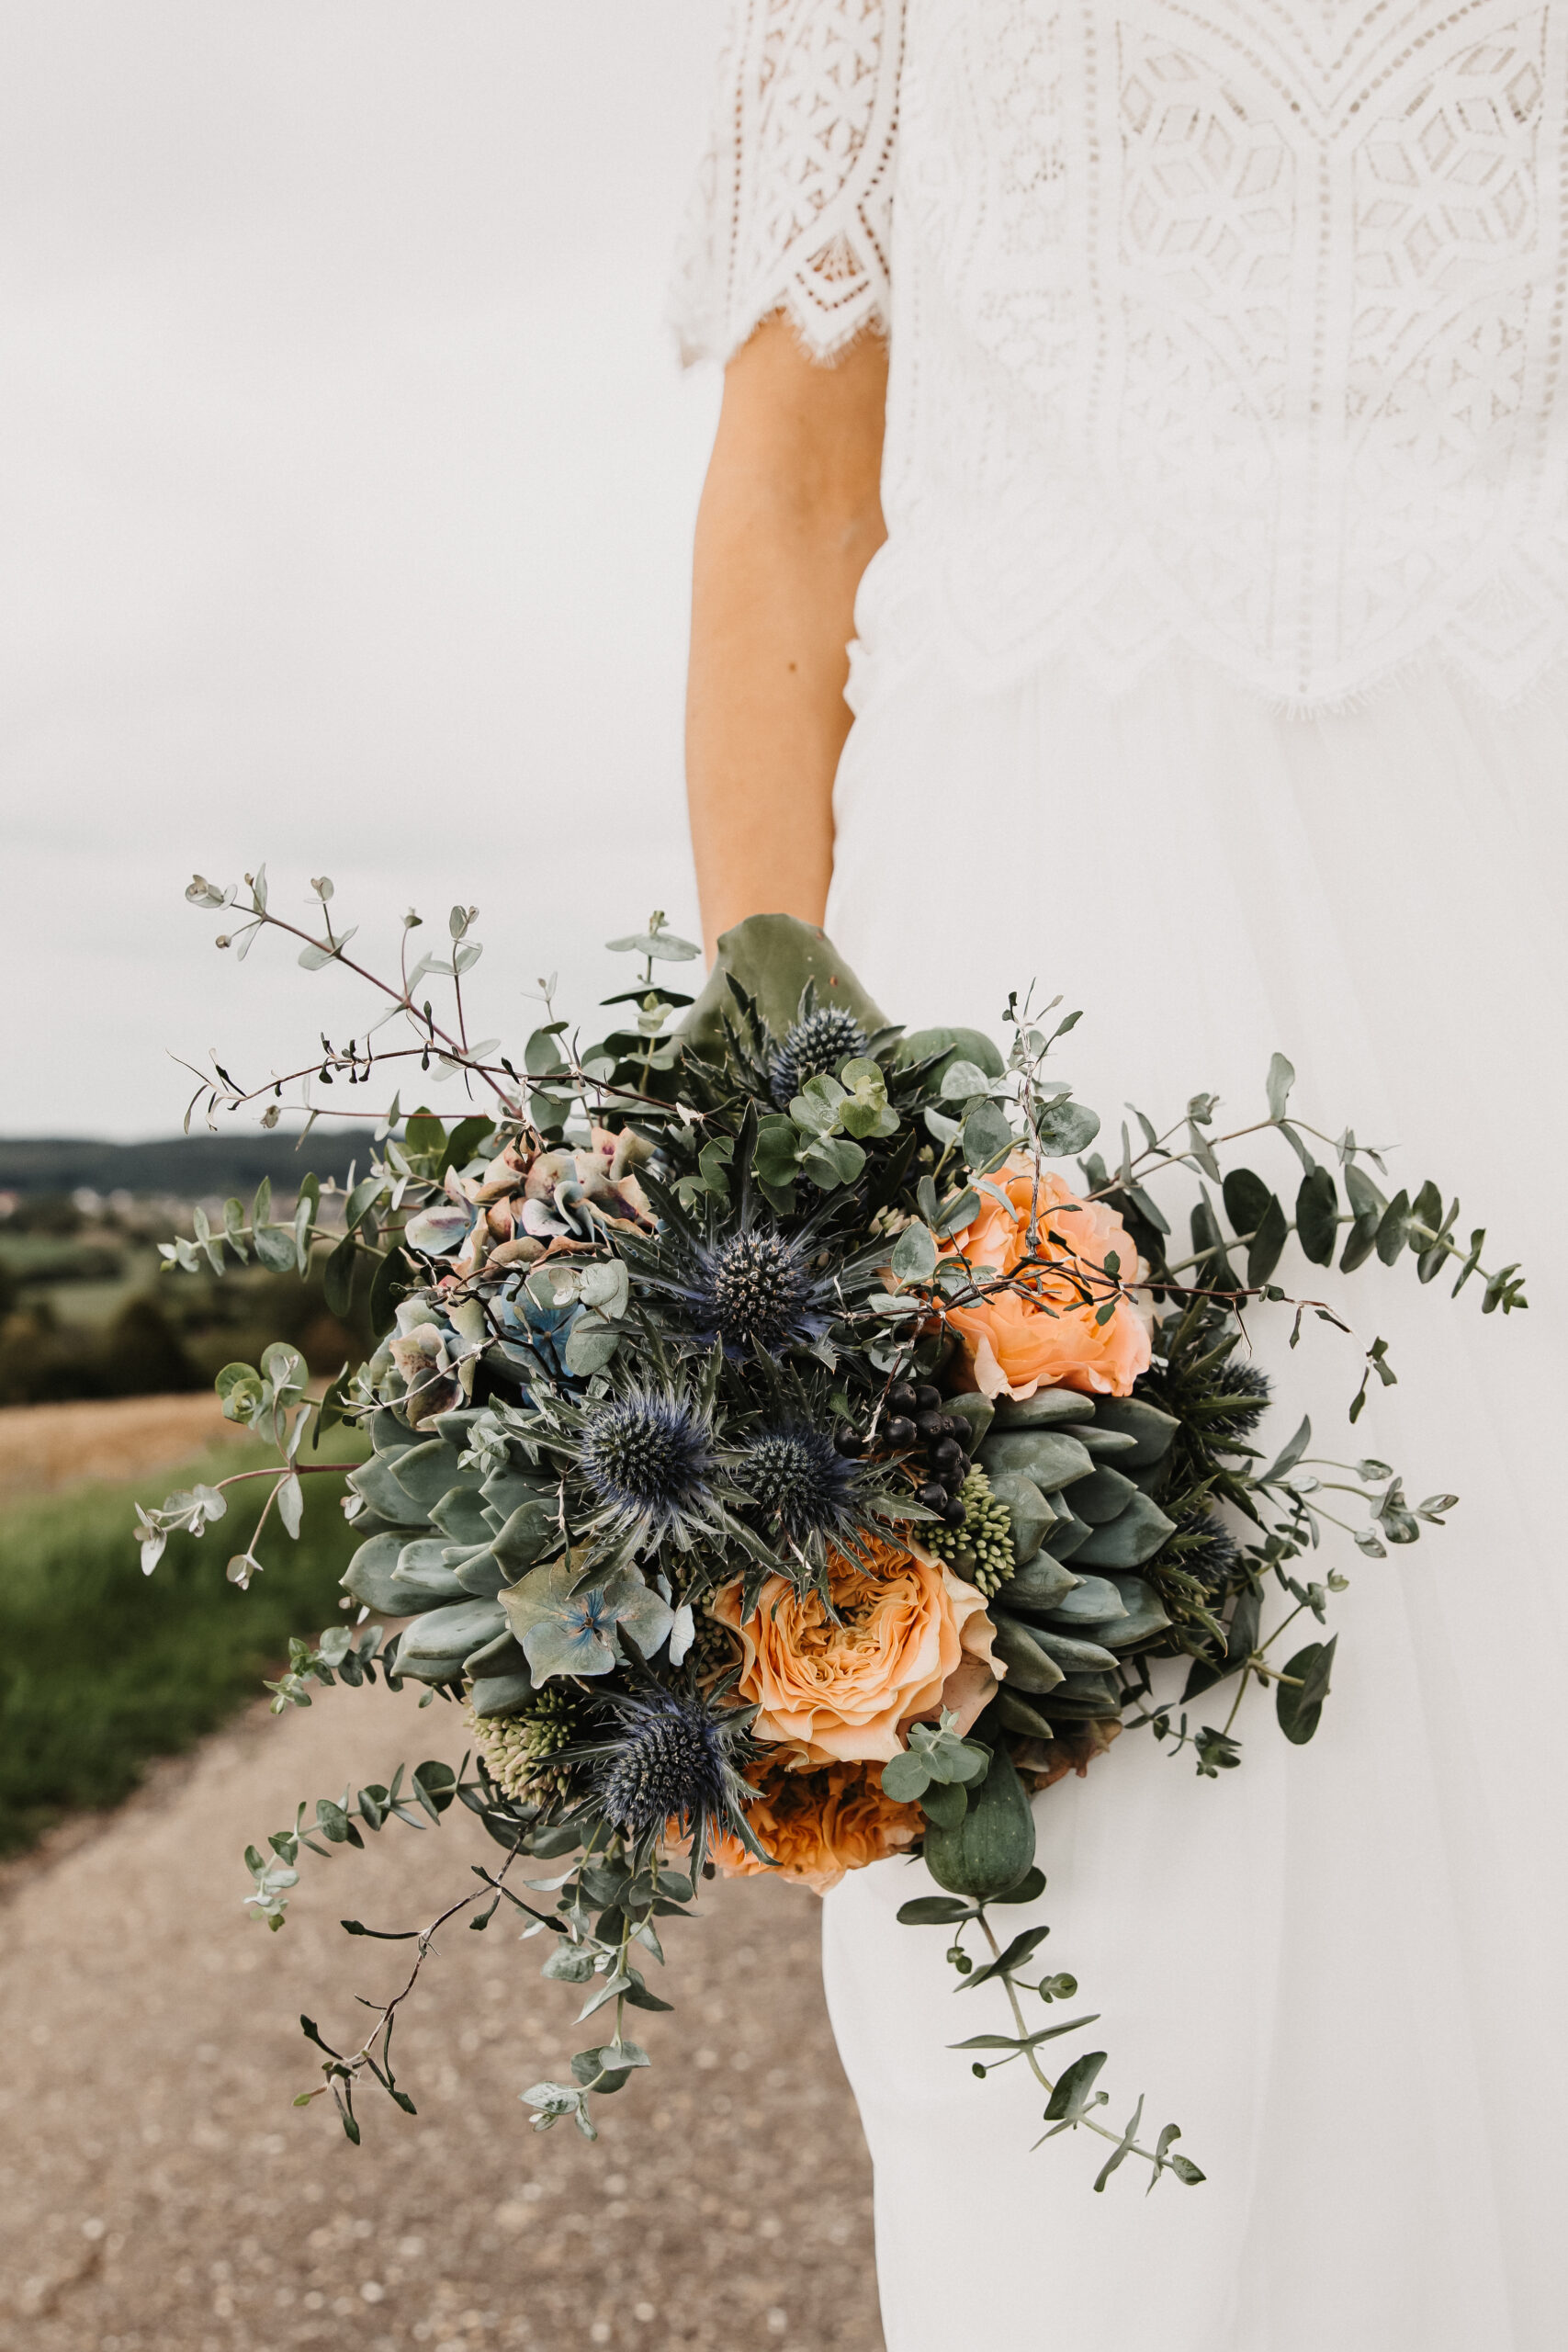 Detailaufnahme des Brautstraußes in Blautönen gehalten mit Aprikot Rosen und die Braut hält ihn an ihrem Körper.